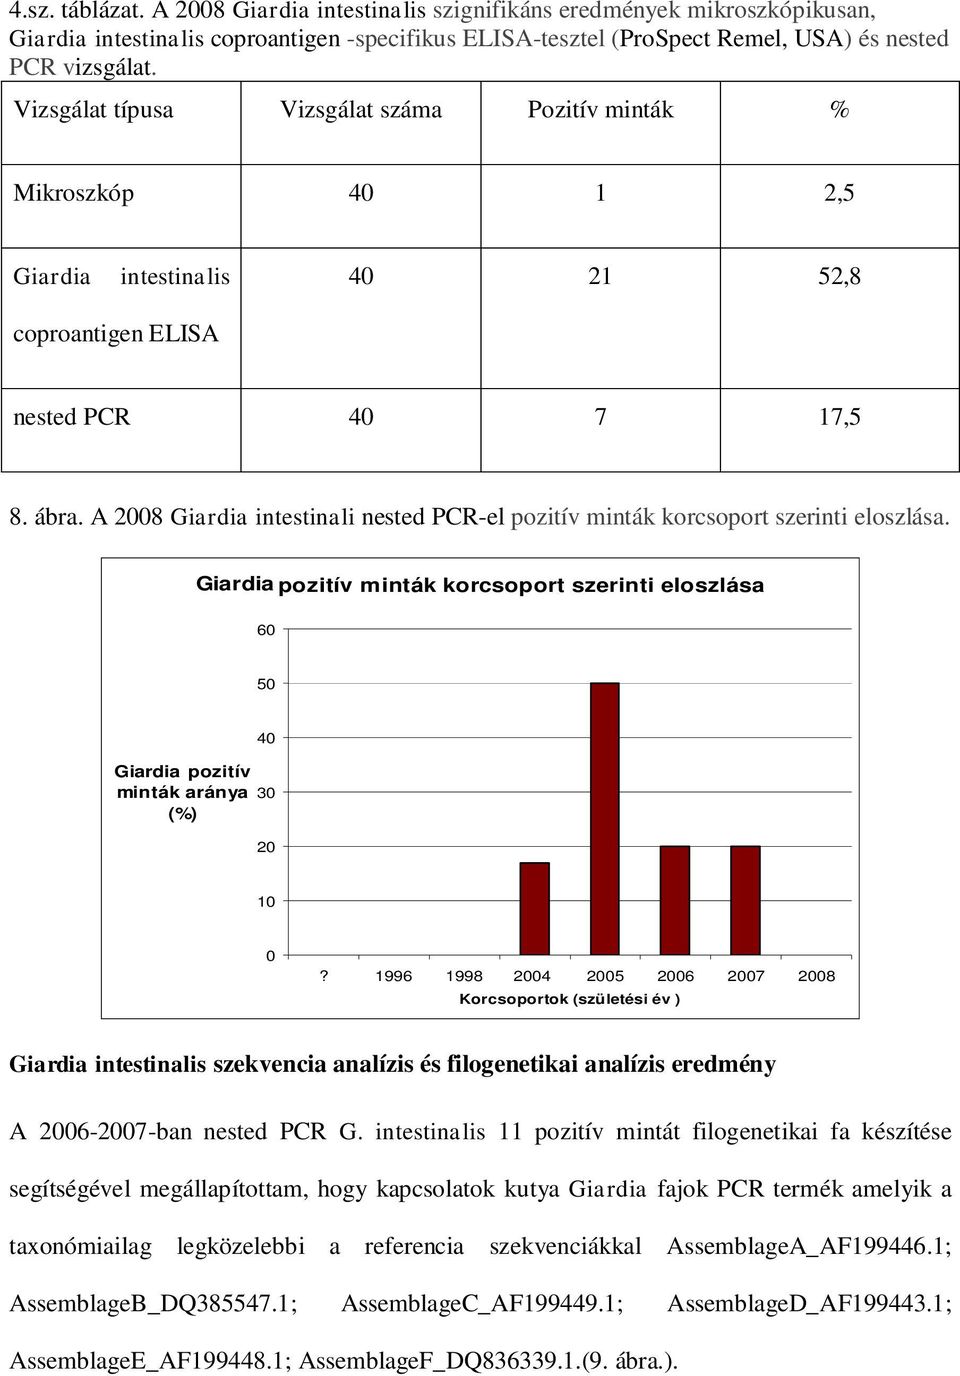 A 2008 Giardia intestinali nested PCR-el pozitív minták korcsoport szerinti eloszlása. Giardia pozitív minták korcsoport szerinti eloszlása 60 50 Giardia pozitív minták aránya (%) 40 30 20 10 0?